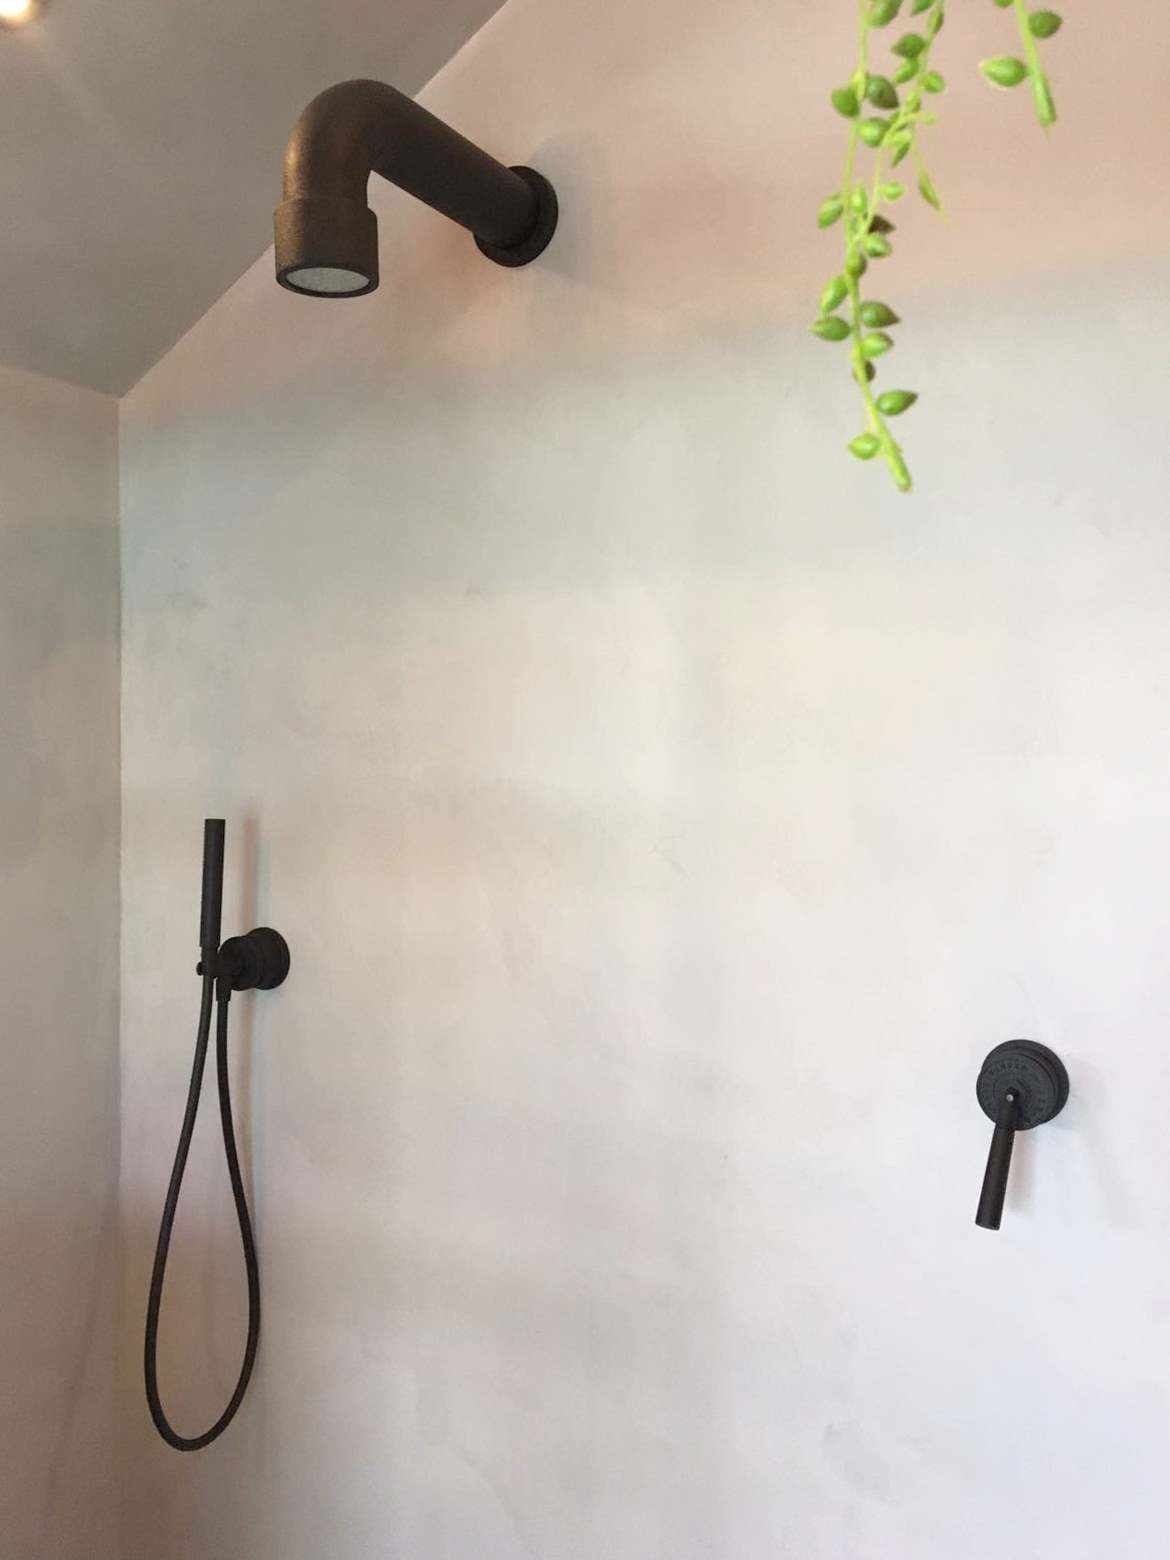 Mikrozement an der Wand einer Dusche in Holland.